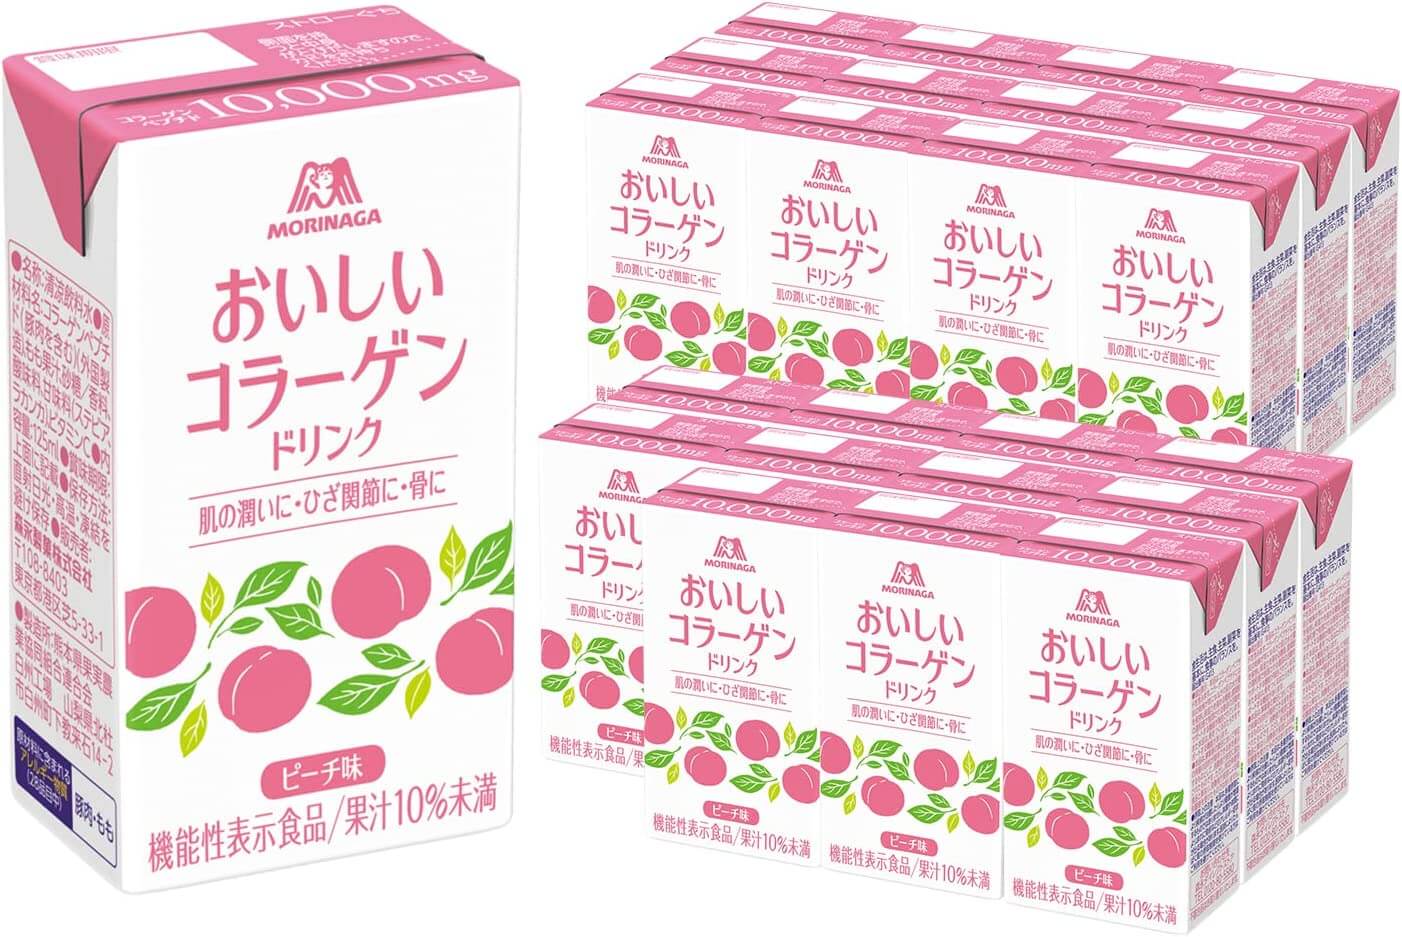 qtem набор коллагеновый напиток для женского здоровья и красоты 2 1 qtem supplement Коллагеновый напиток Morinaga Seika Delicious, 24 упаковки